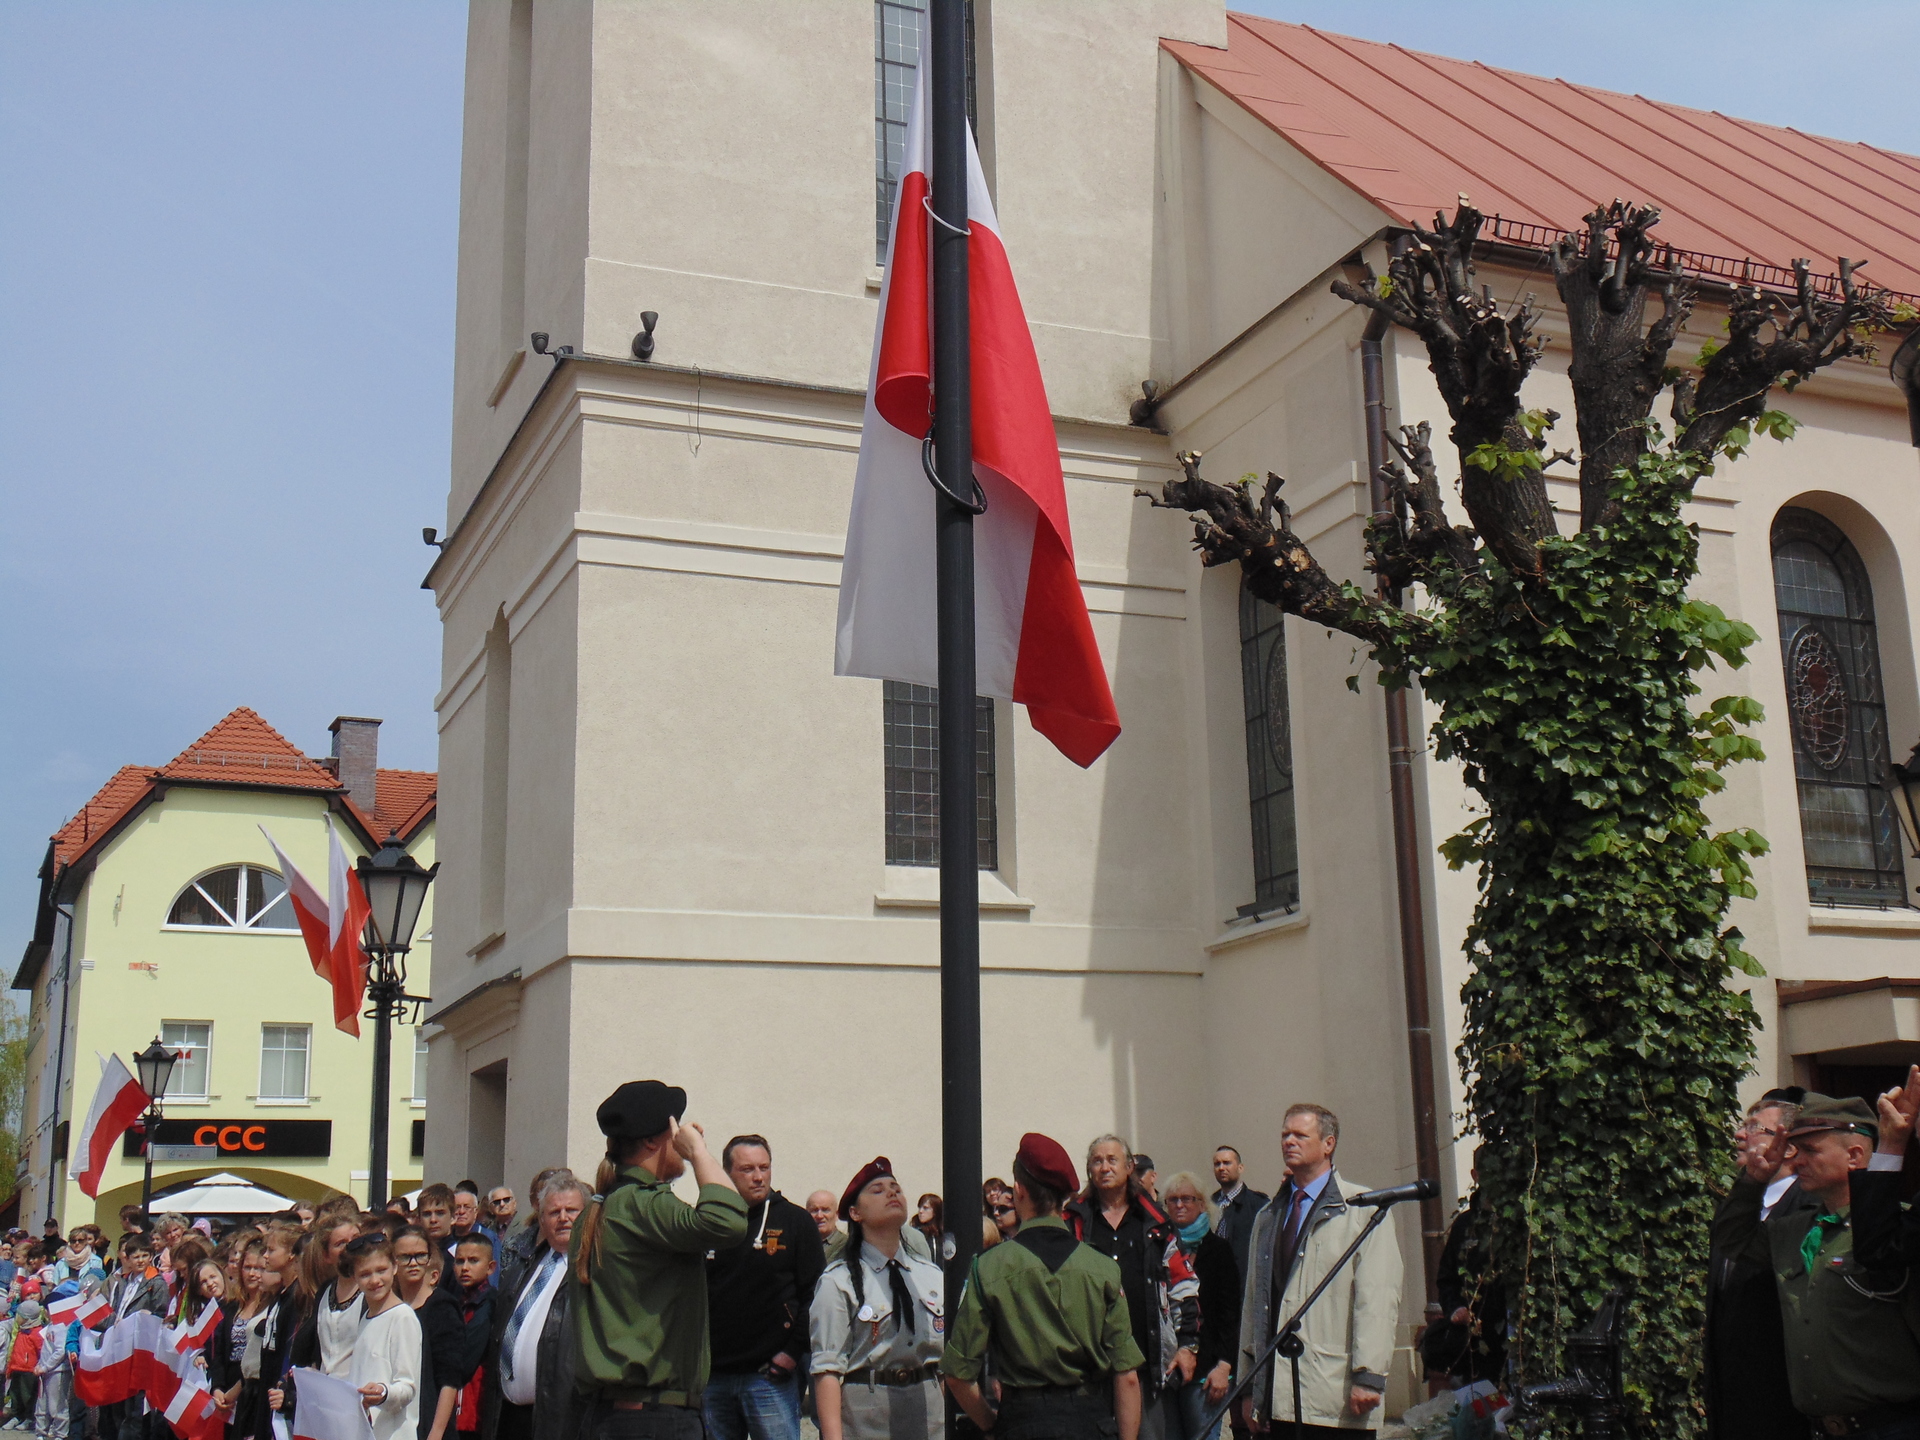 W polkowickim starostwie będą rozdawać flagi